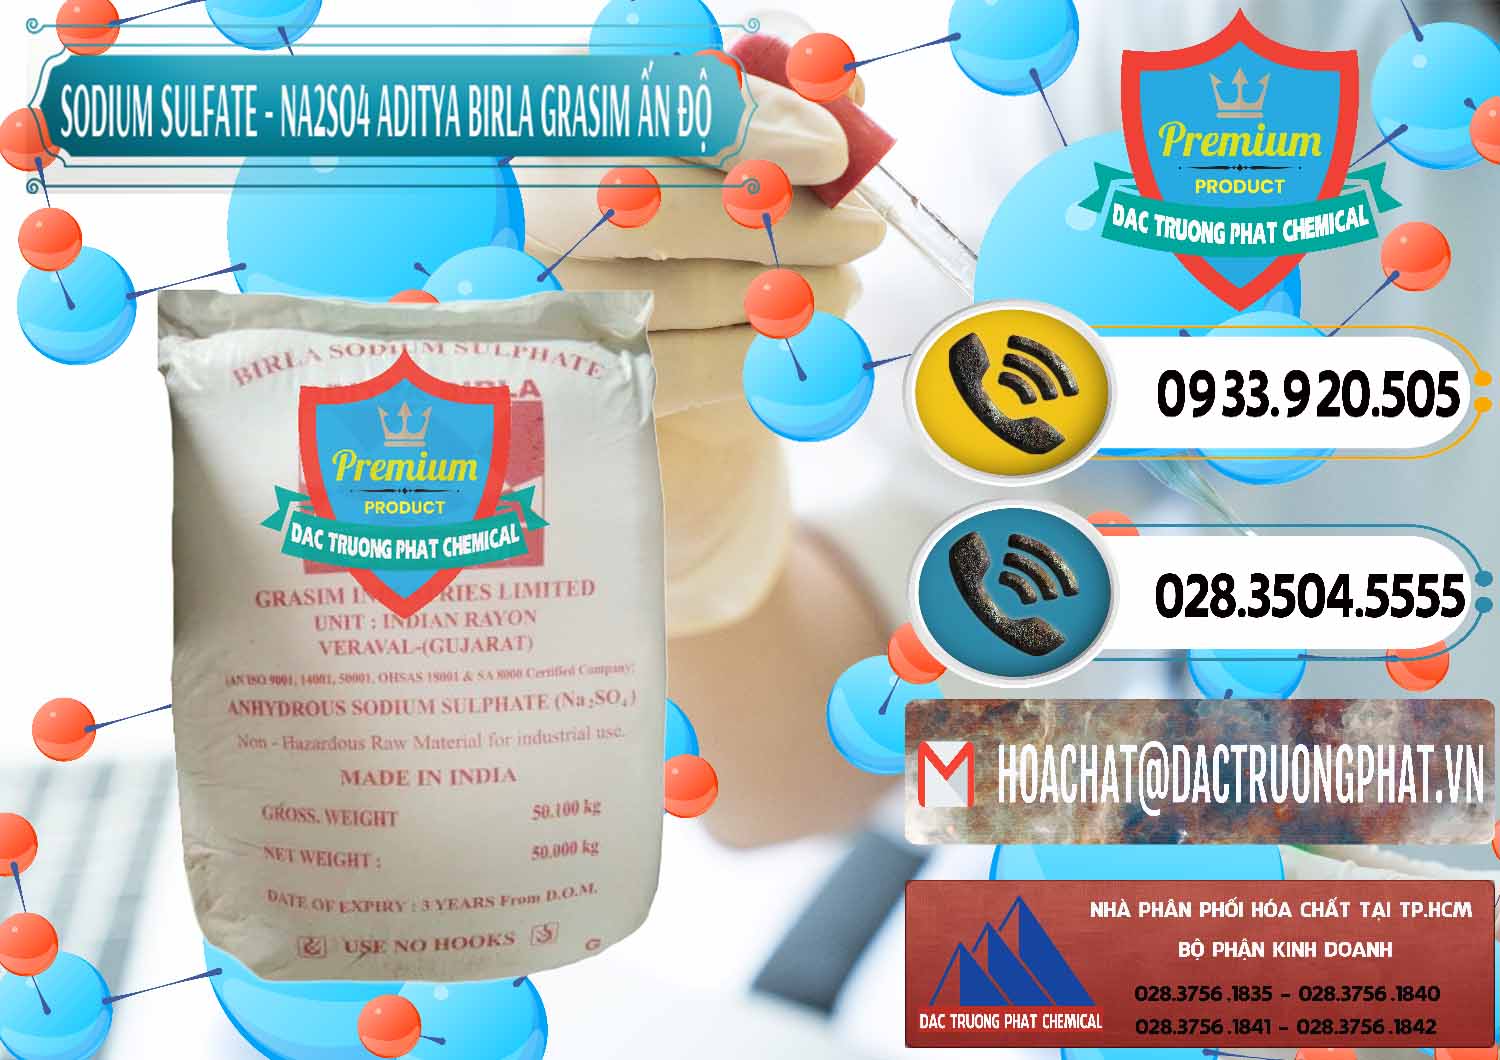 Công ty chuyên bán và cung ứng Sodium Sulphate - Muối Sunfat Na2SO4 Grasim Ấn Độ India - 0356 - Phân phối & cung ứng hóa chất tại TP.HCM - hoachatdetnhuom.vn